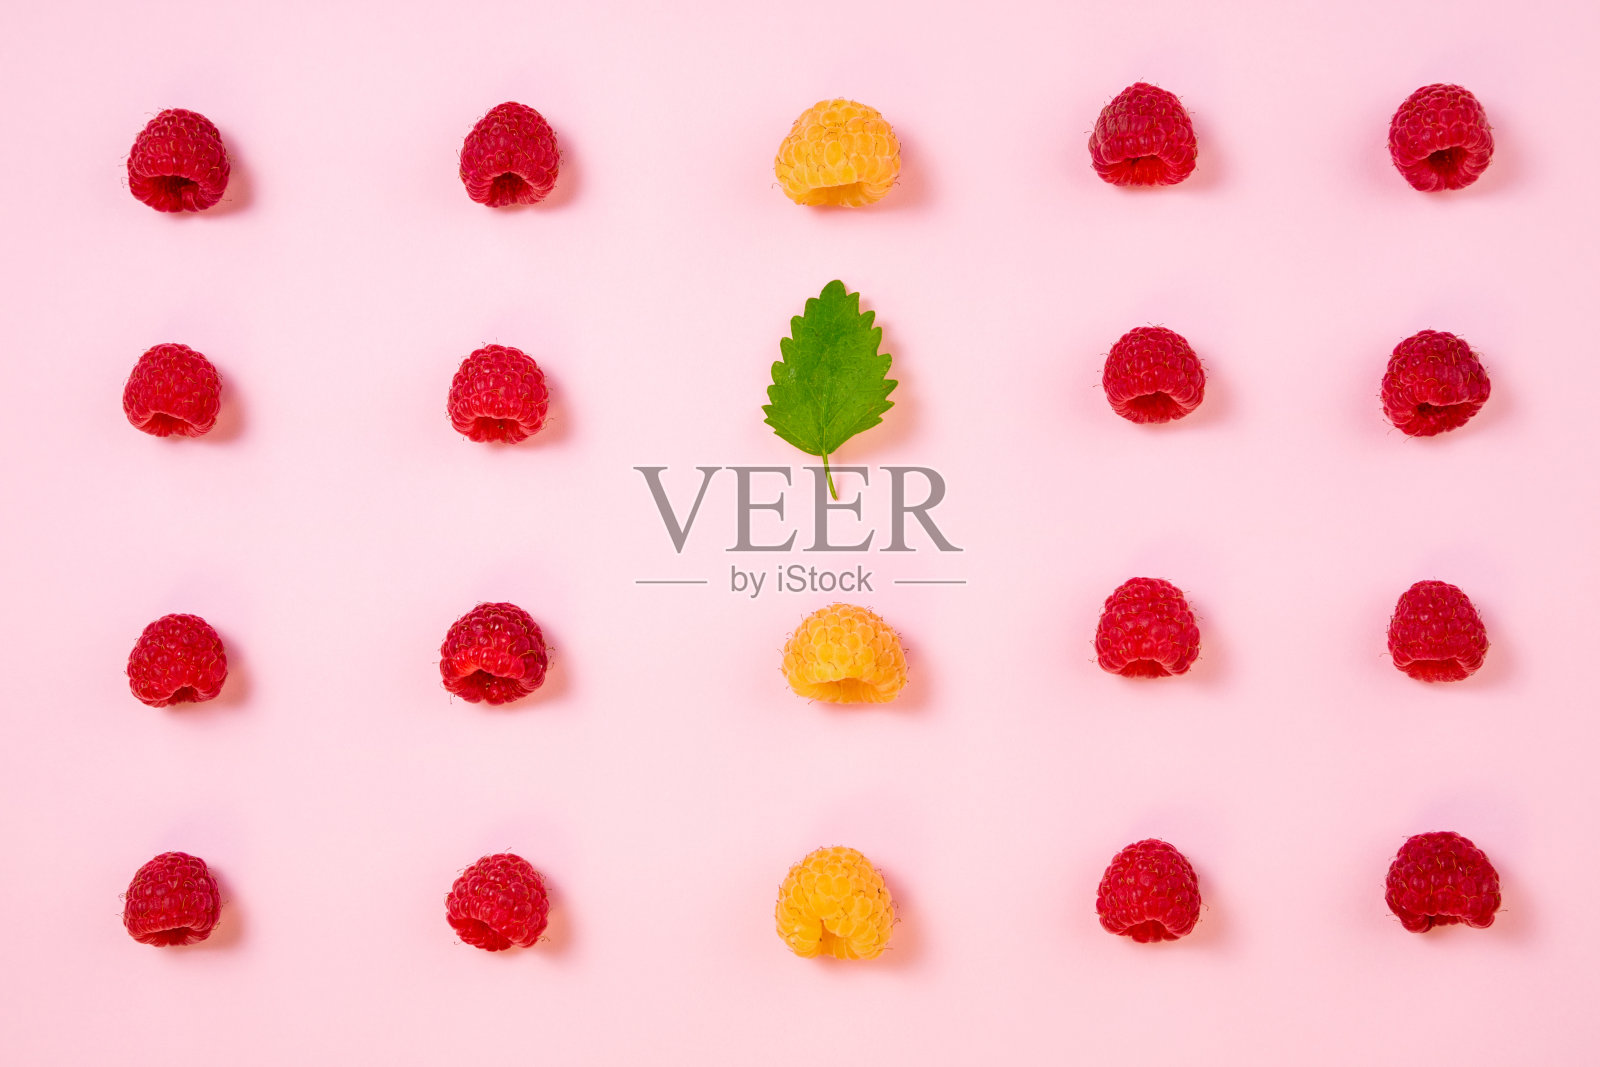 粉红色背景上的覆盆子图案。平放夏季浆果，红色和黄色的覆盆子照片摄影图片